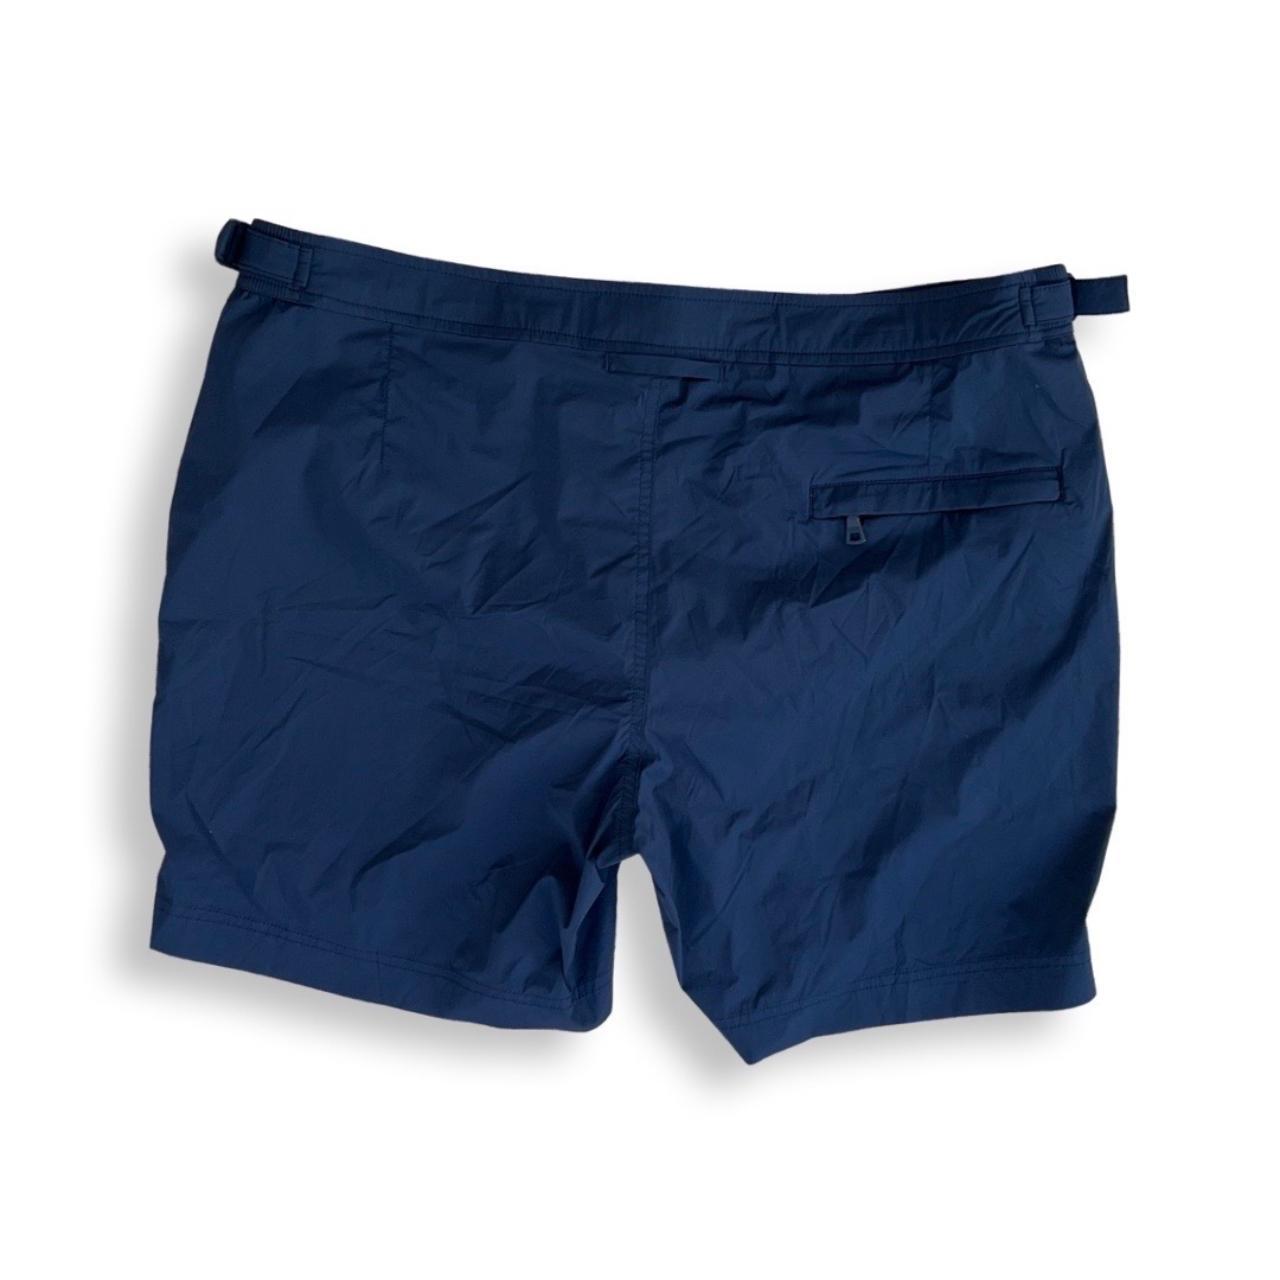 Orlebar Brown Men's Navy Swim-briefs-shorts (2)